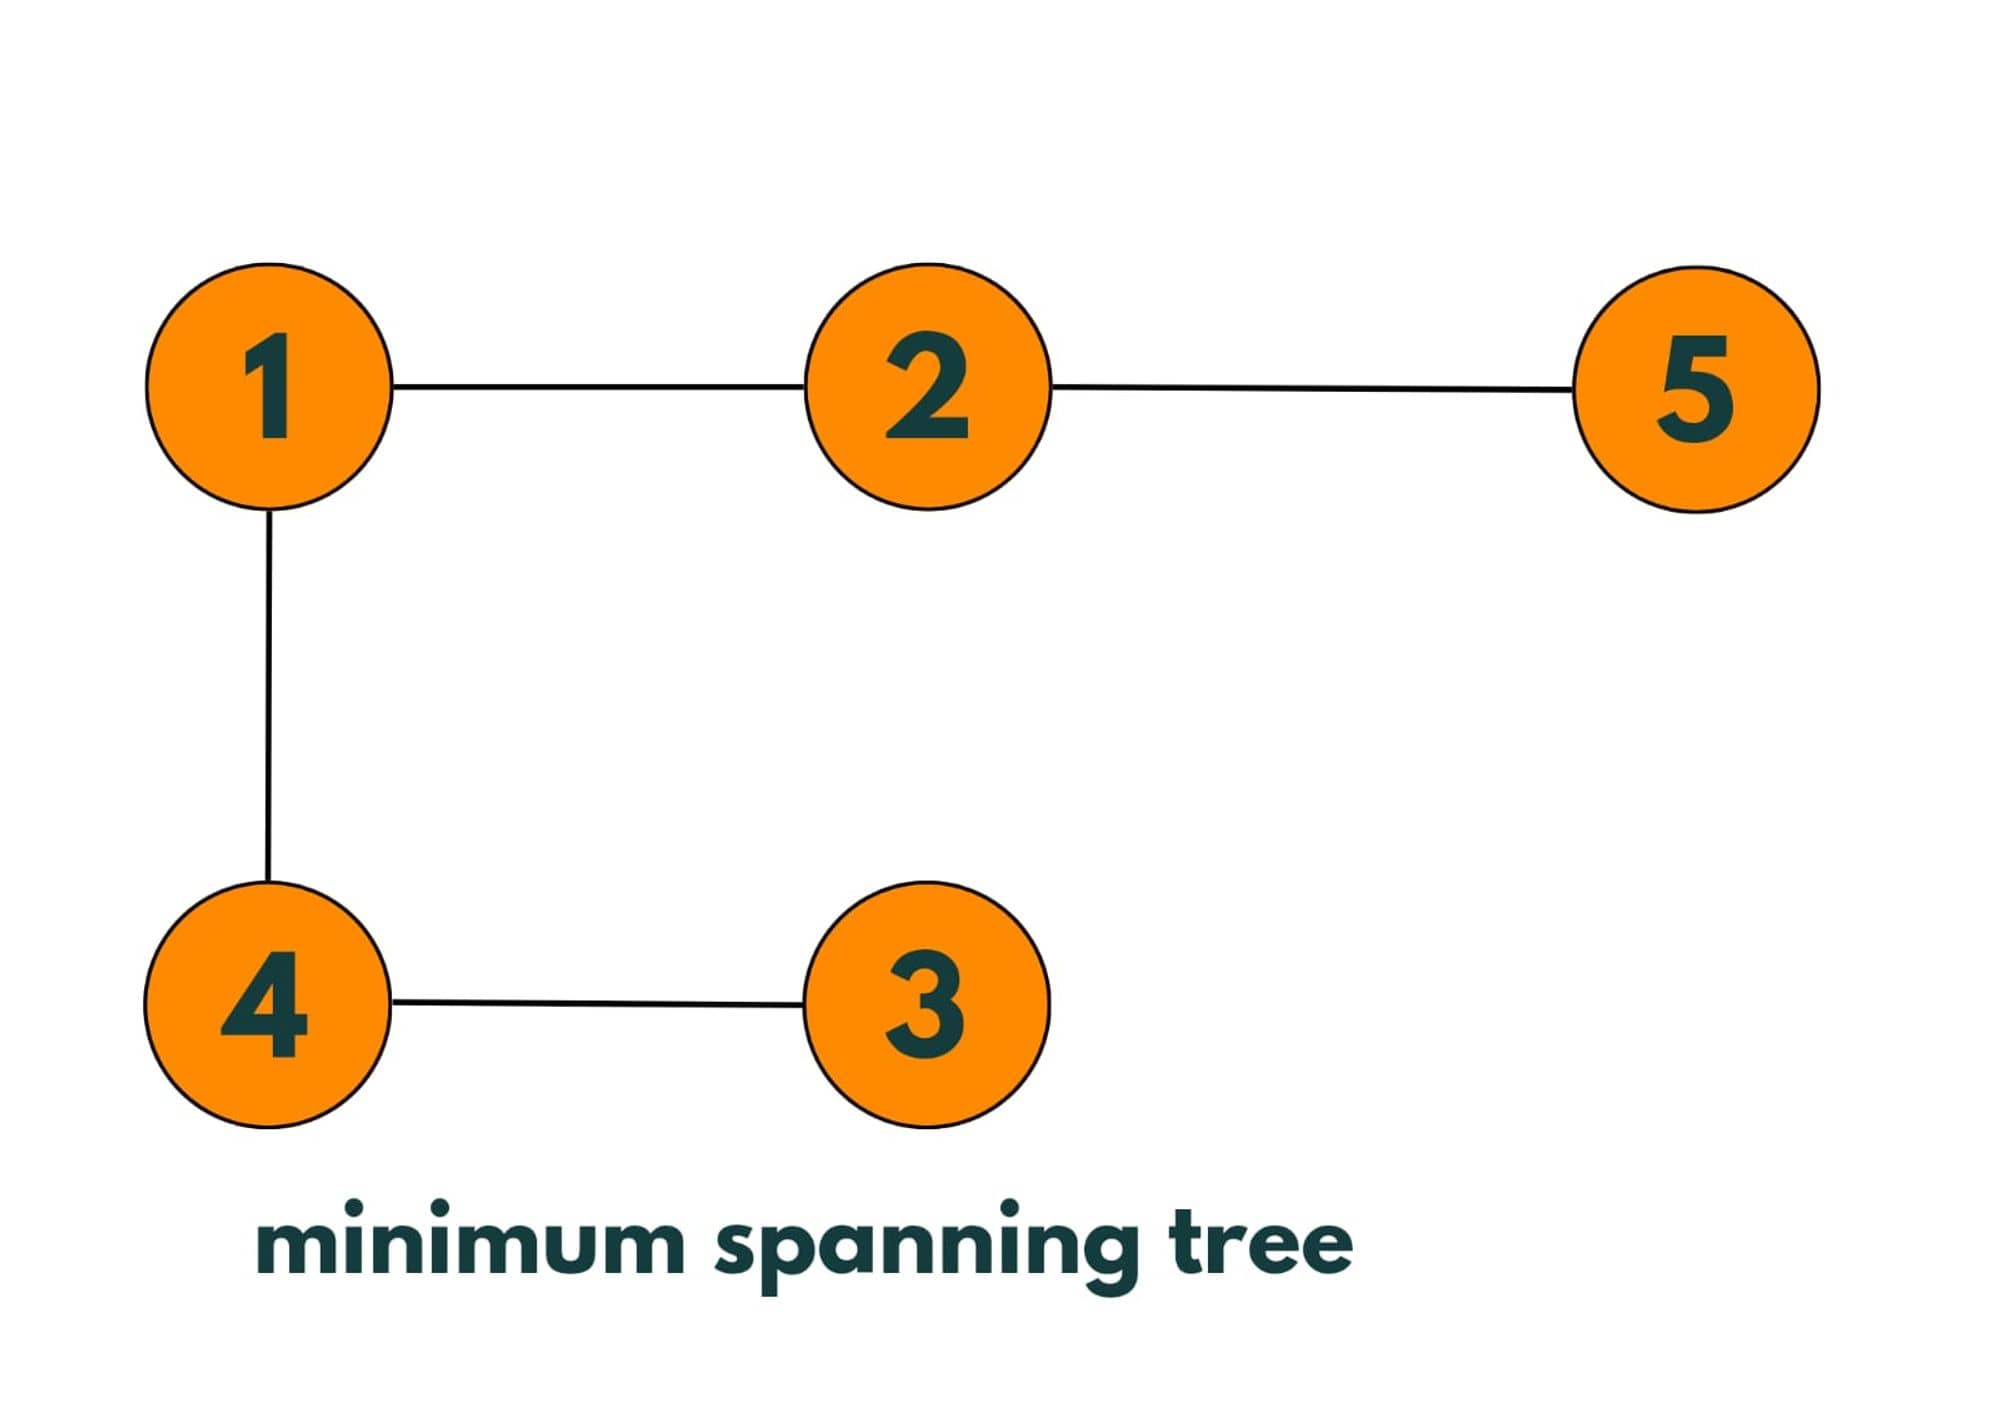 minium spanning tree